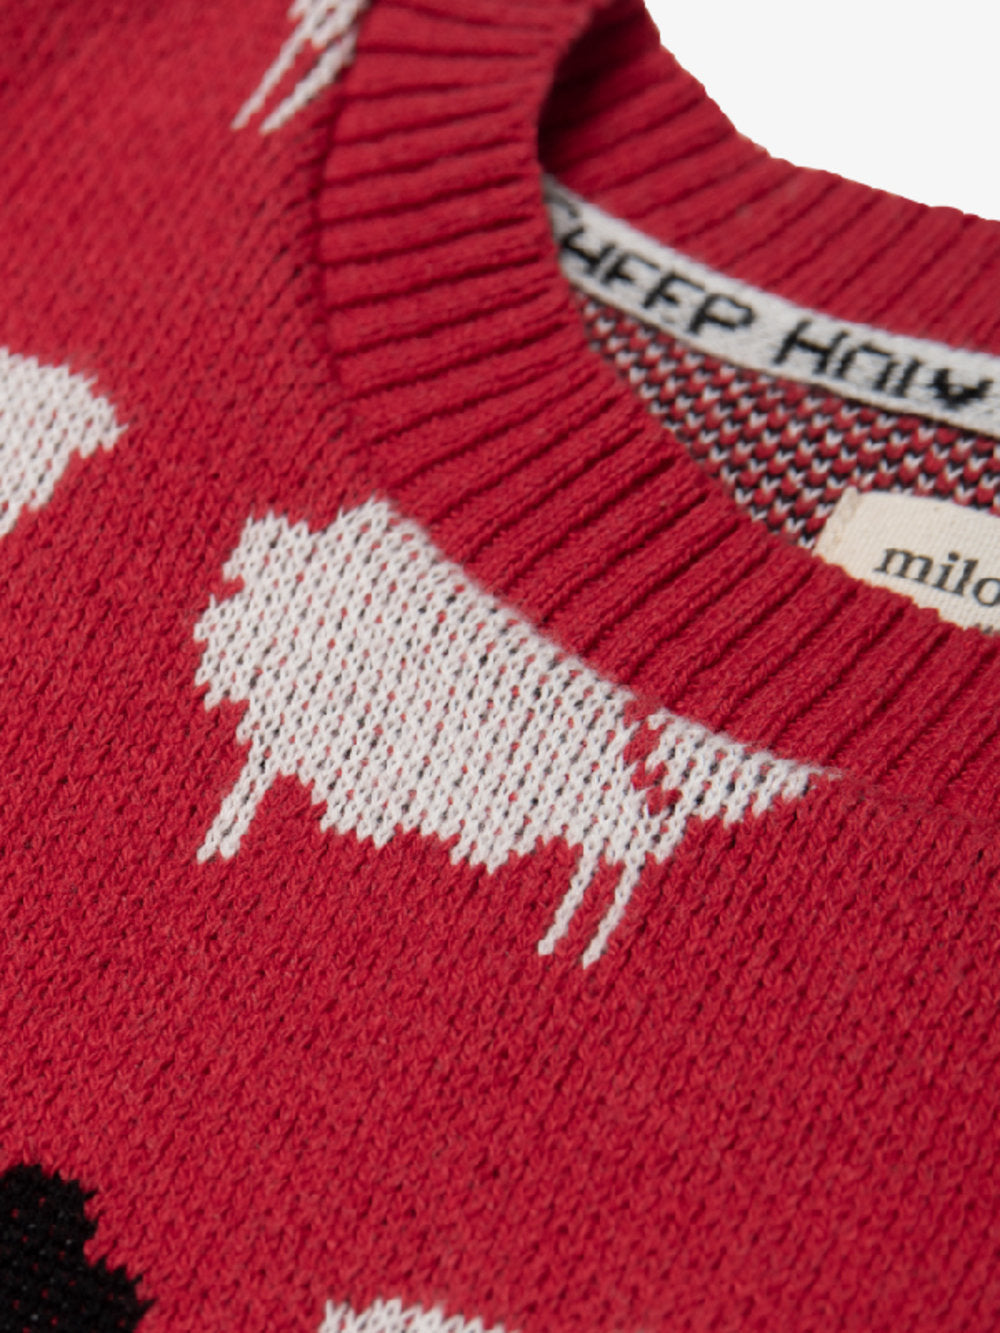 Milo & Dexter - SS24 - Princess Diana Sweater - The Holy Sheep Sweater  - close -up 3